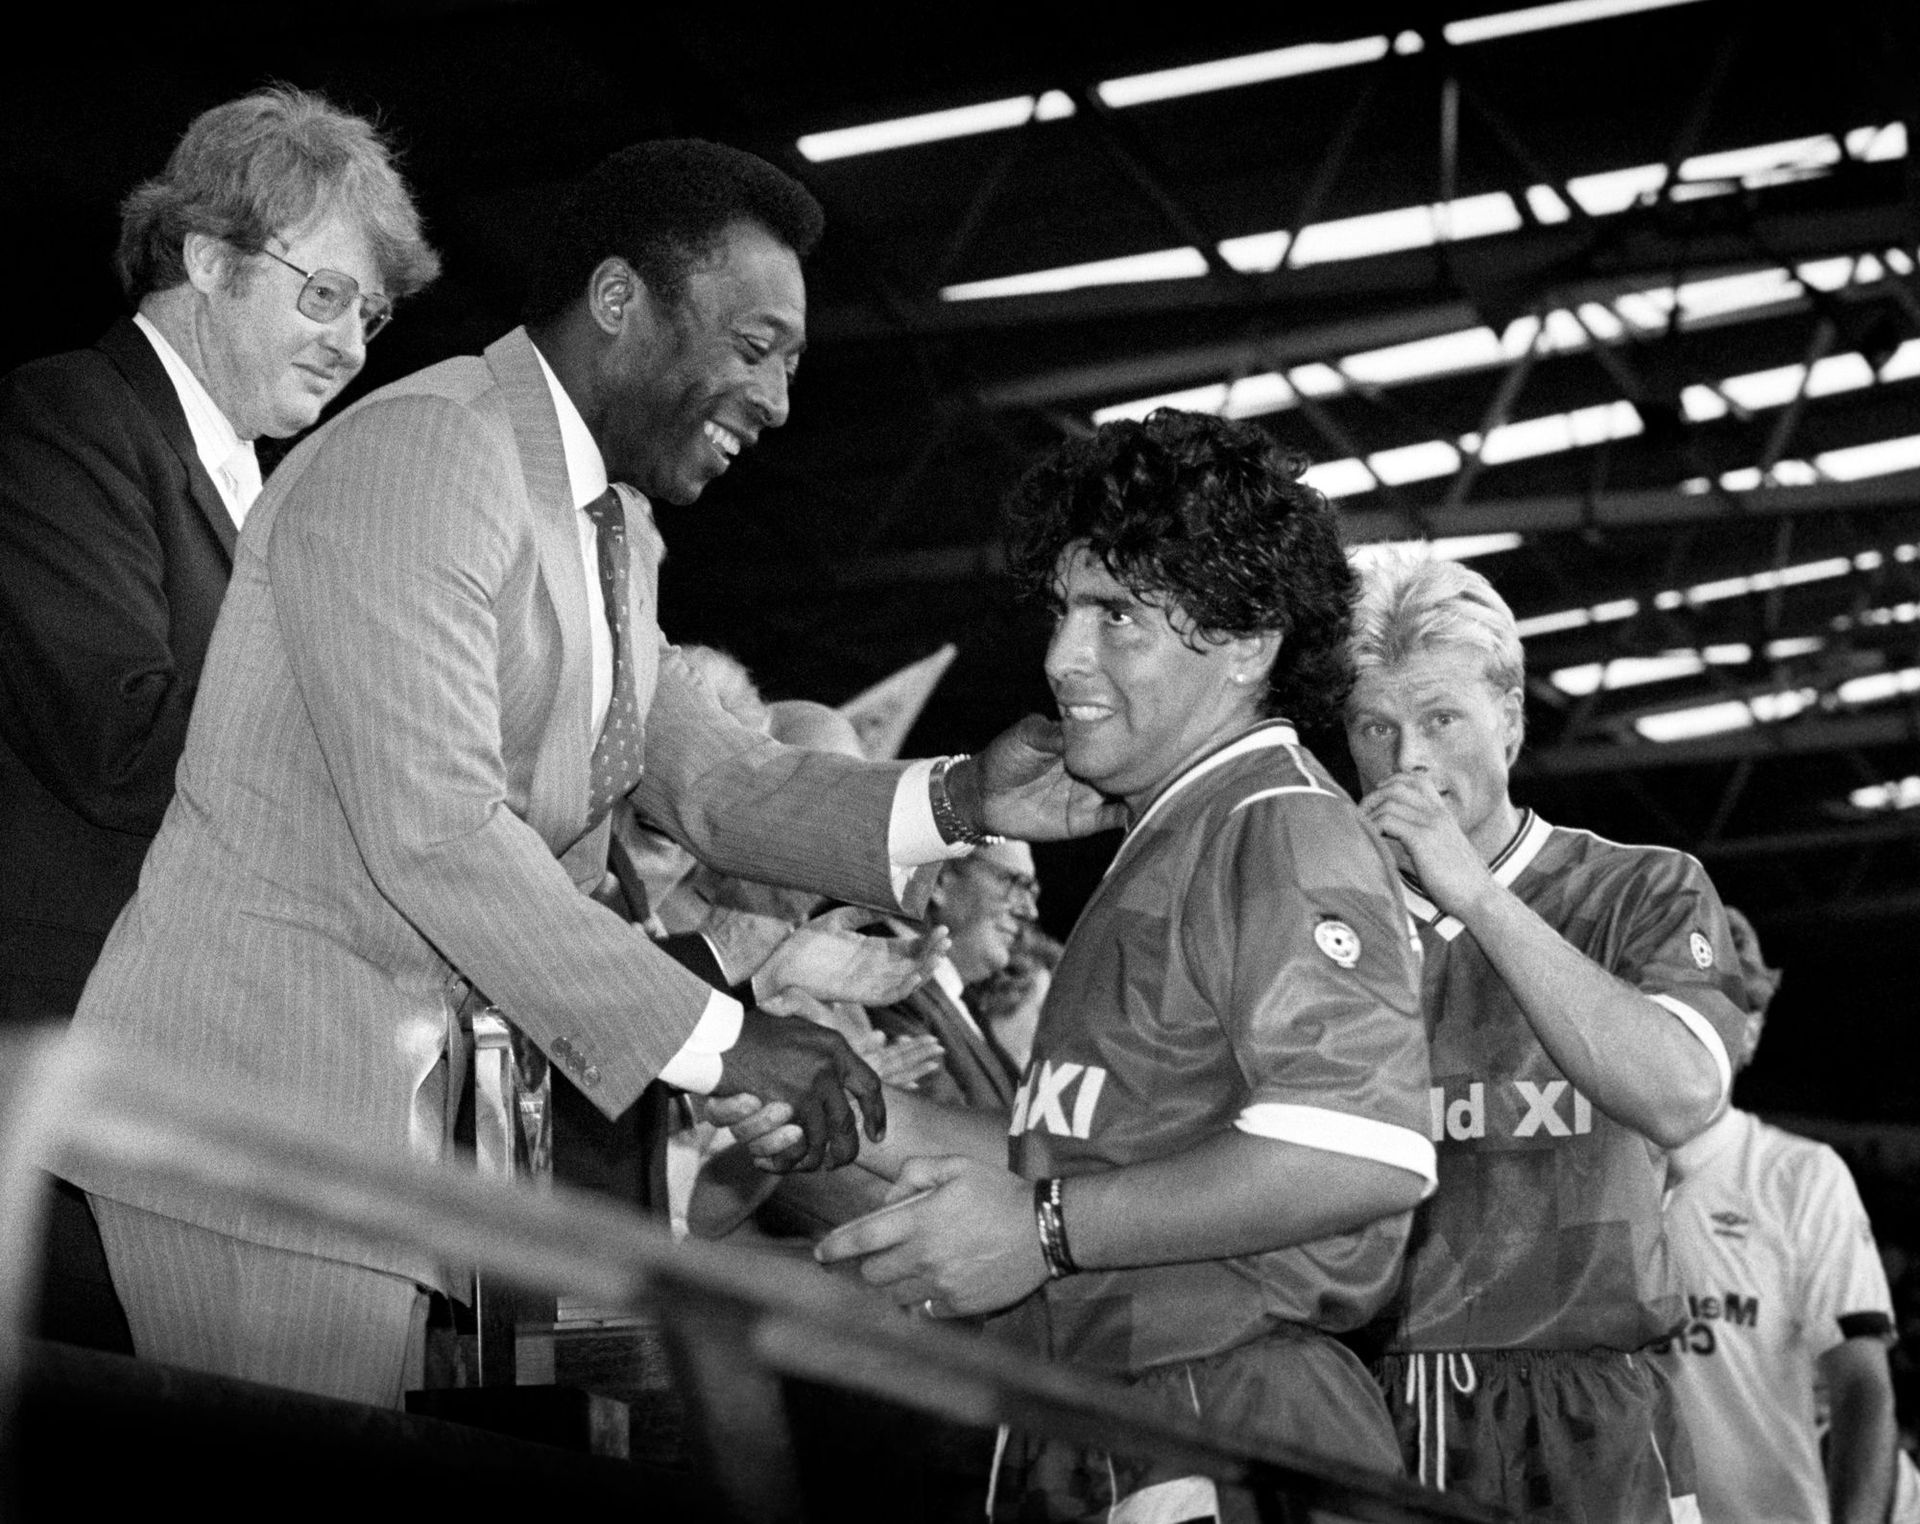 Pelé itt már Maradonának gratulál 1987-ben, ám általános vélekedés szerint egy kicsit bátrabb szövetséggel akár az „argentin Pelé” is megszülethetett volna '78-ban. / Foto: Northfoto